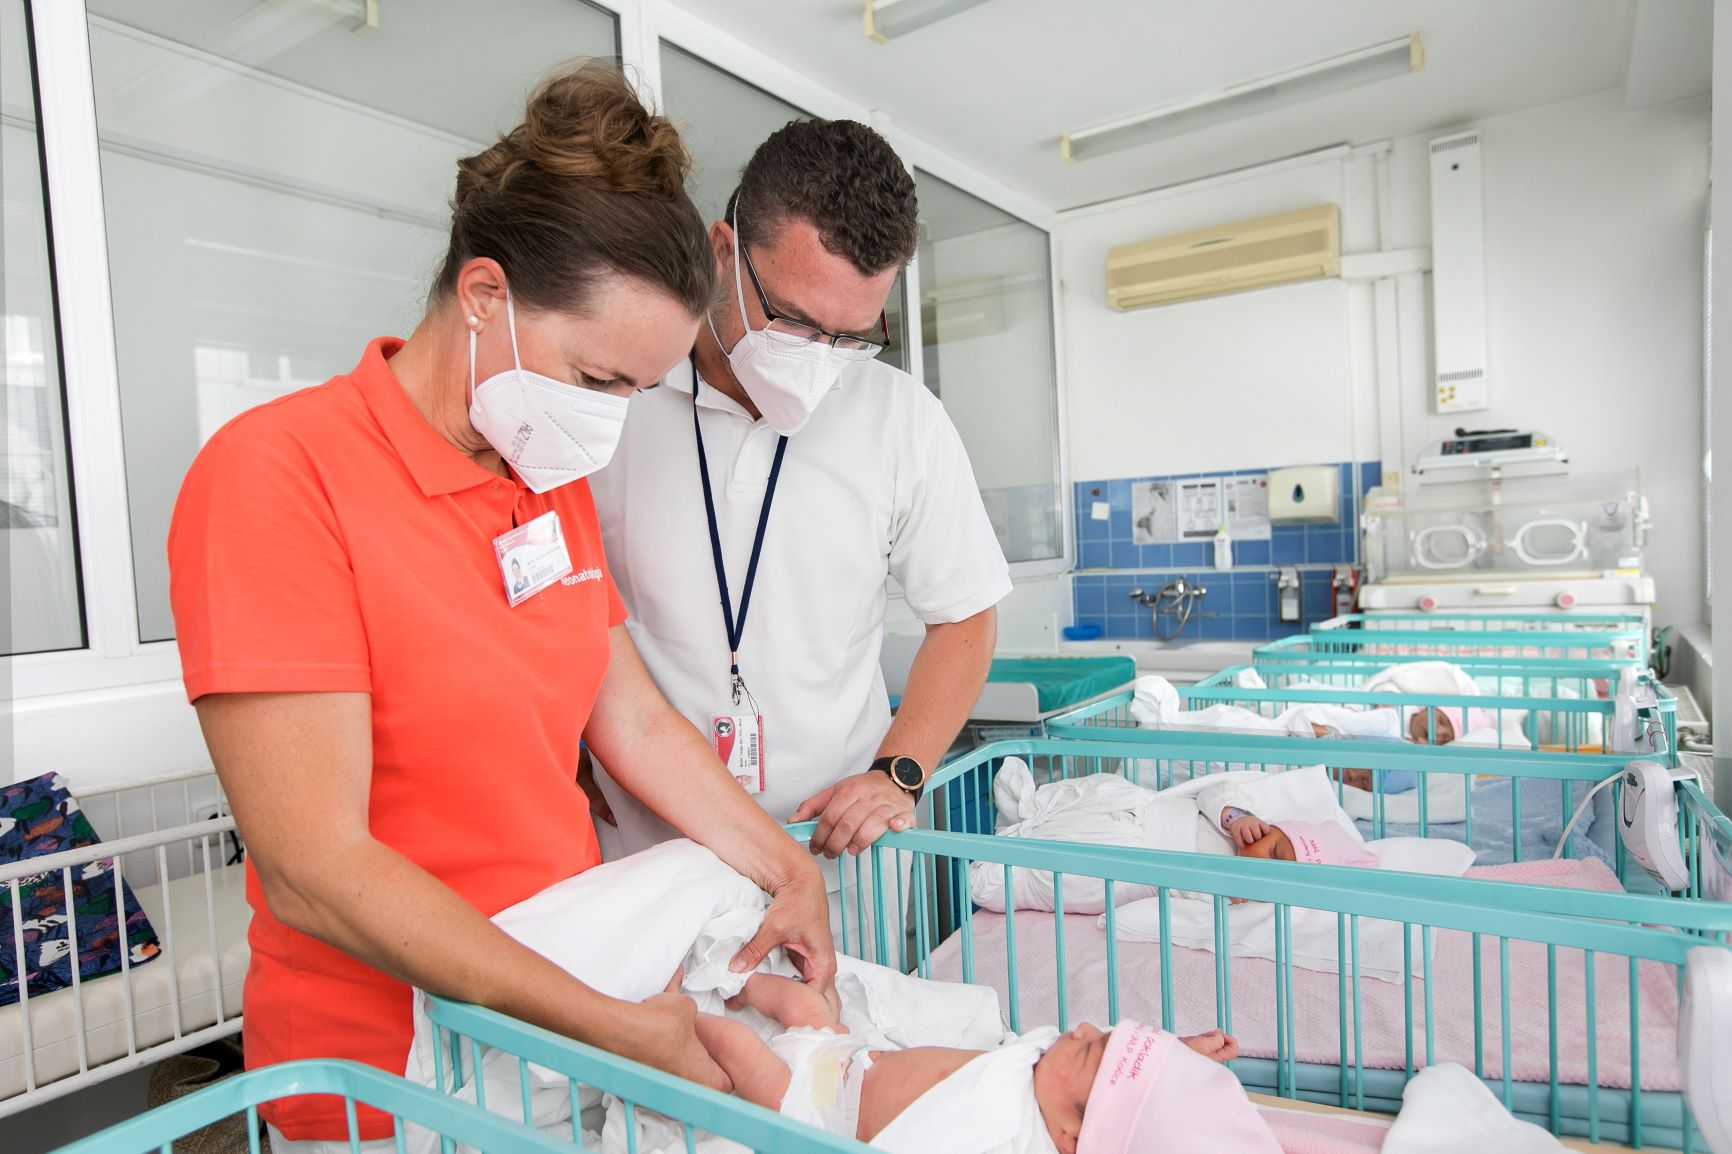 Asociácia nemocníc navrhuje vymedziť právo rodičky na prítomnosť blízkej osoby iba na dobu pôrodu